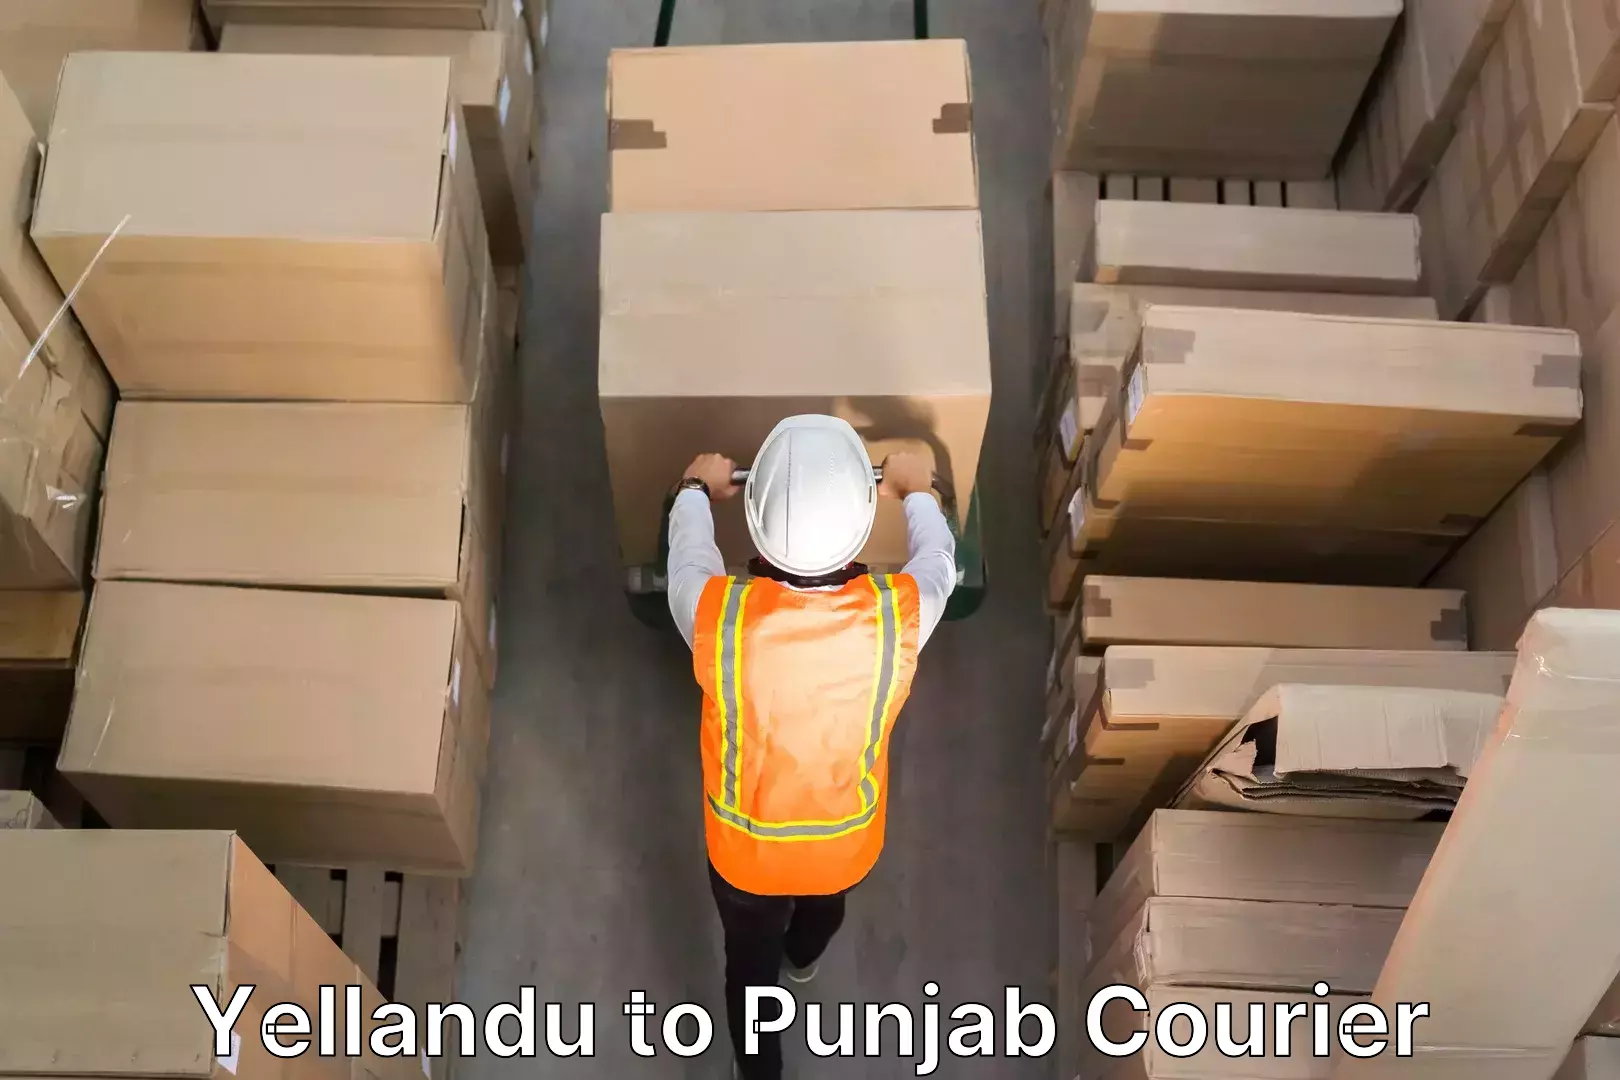 Furniture transport company Yellandu to Punjab